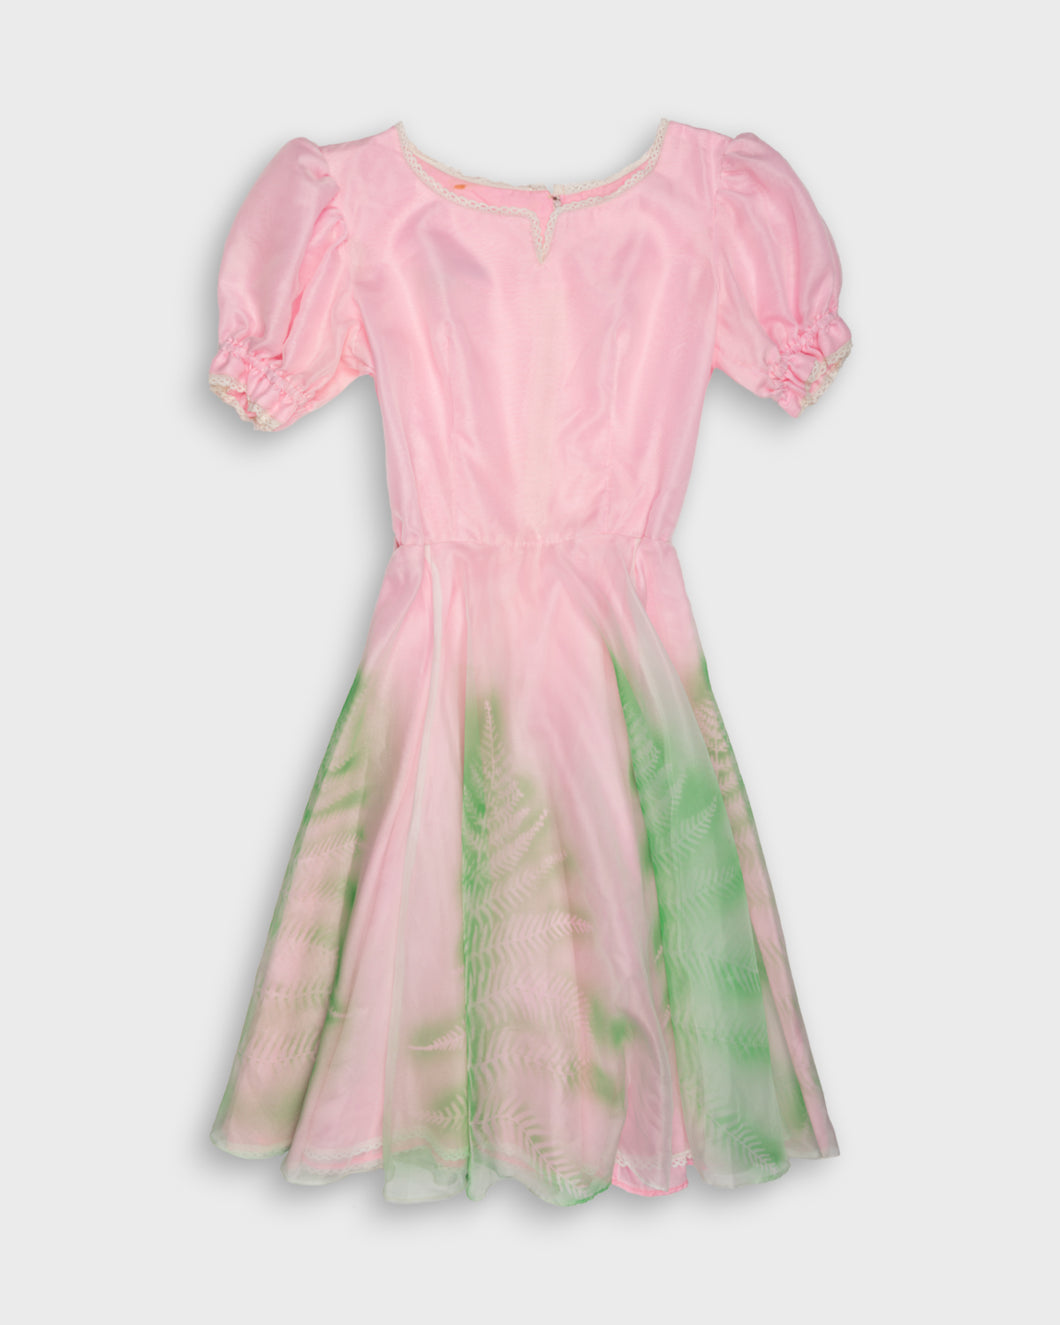 Bubblegum pink fairy dress with leafy stencil patterns